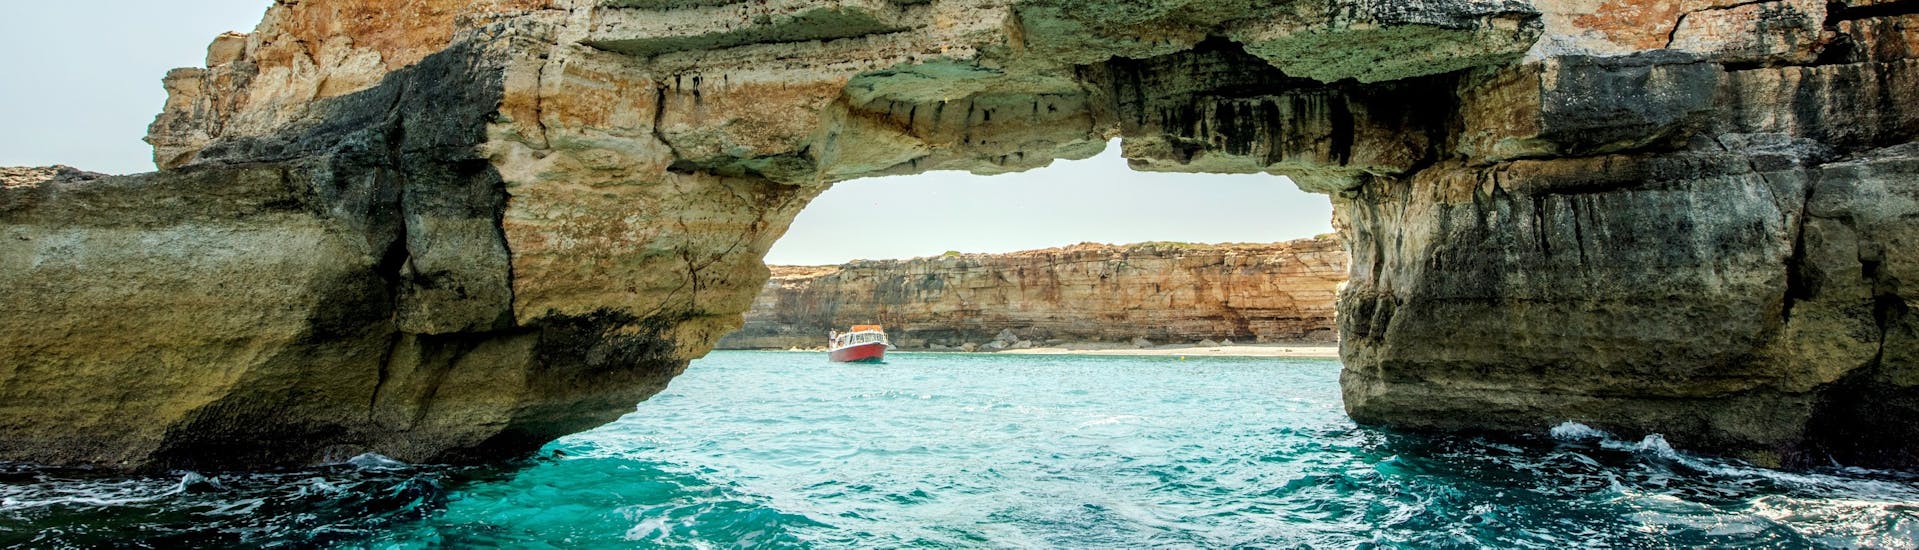 Balade en bateau de Réthymnon aux grottes pirates.